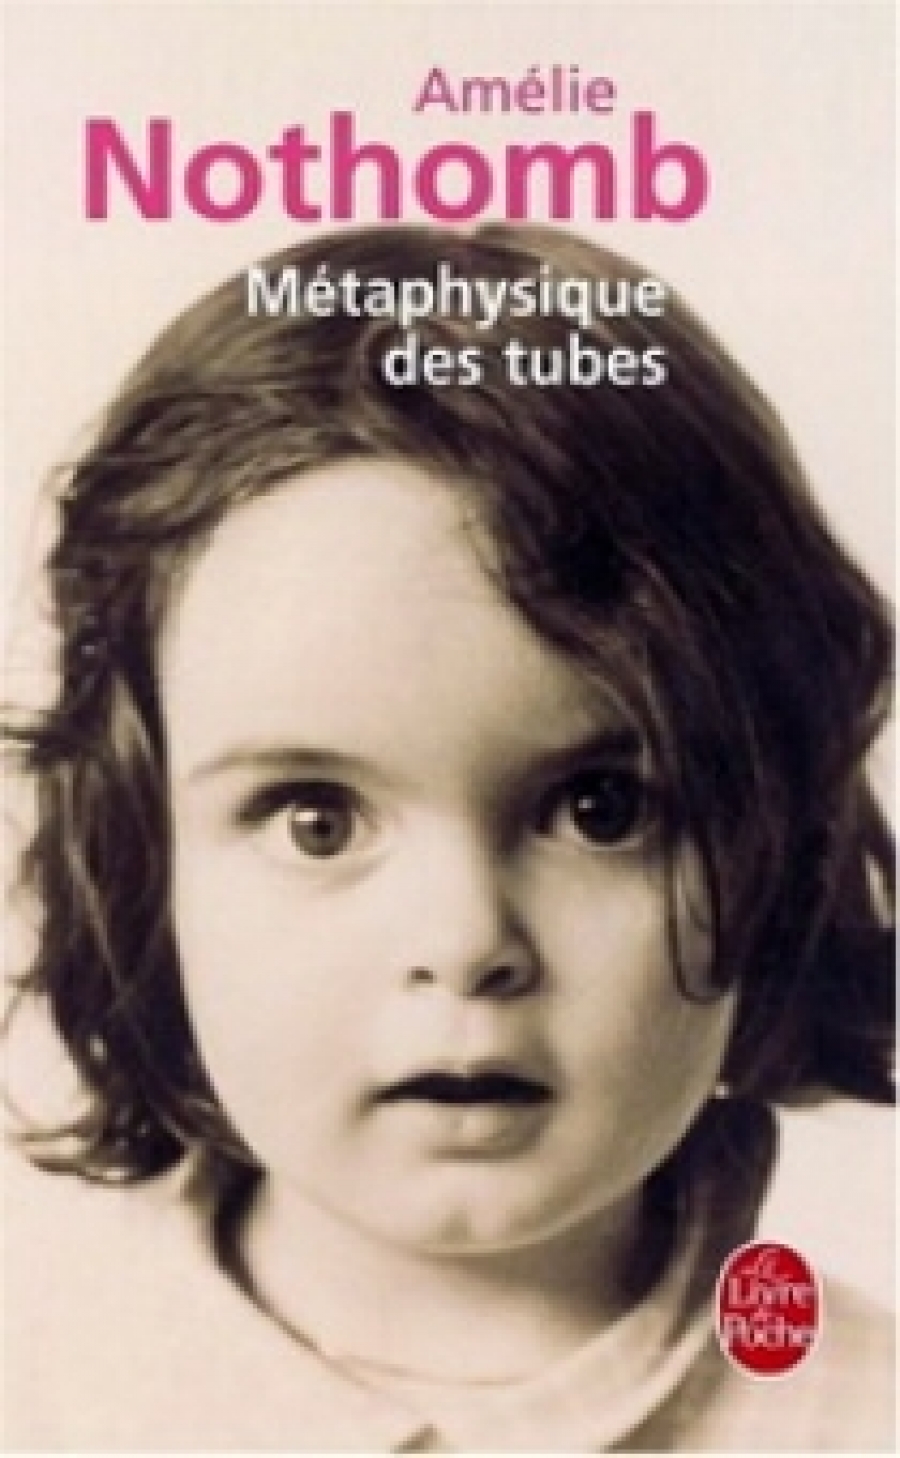 Nothomb A. Metaphysique des tubes 